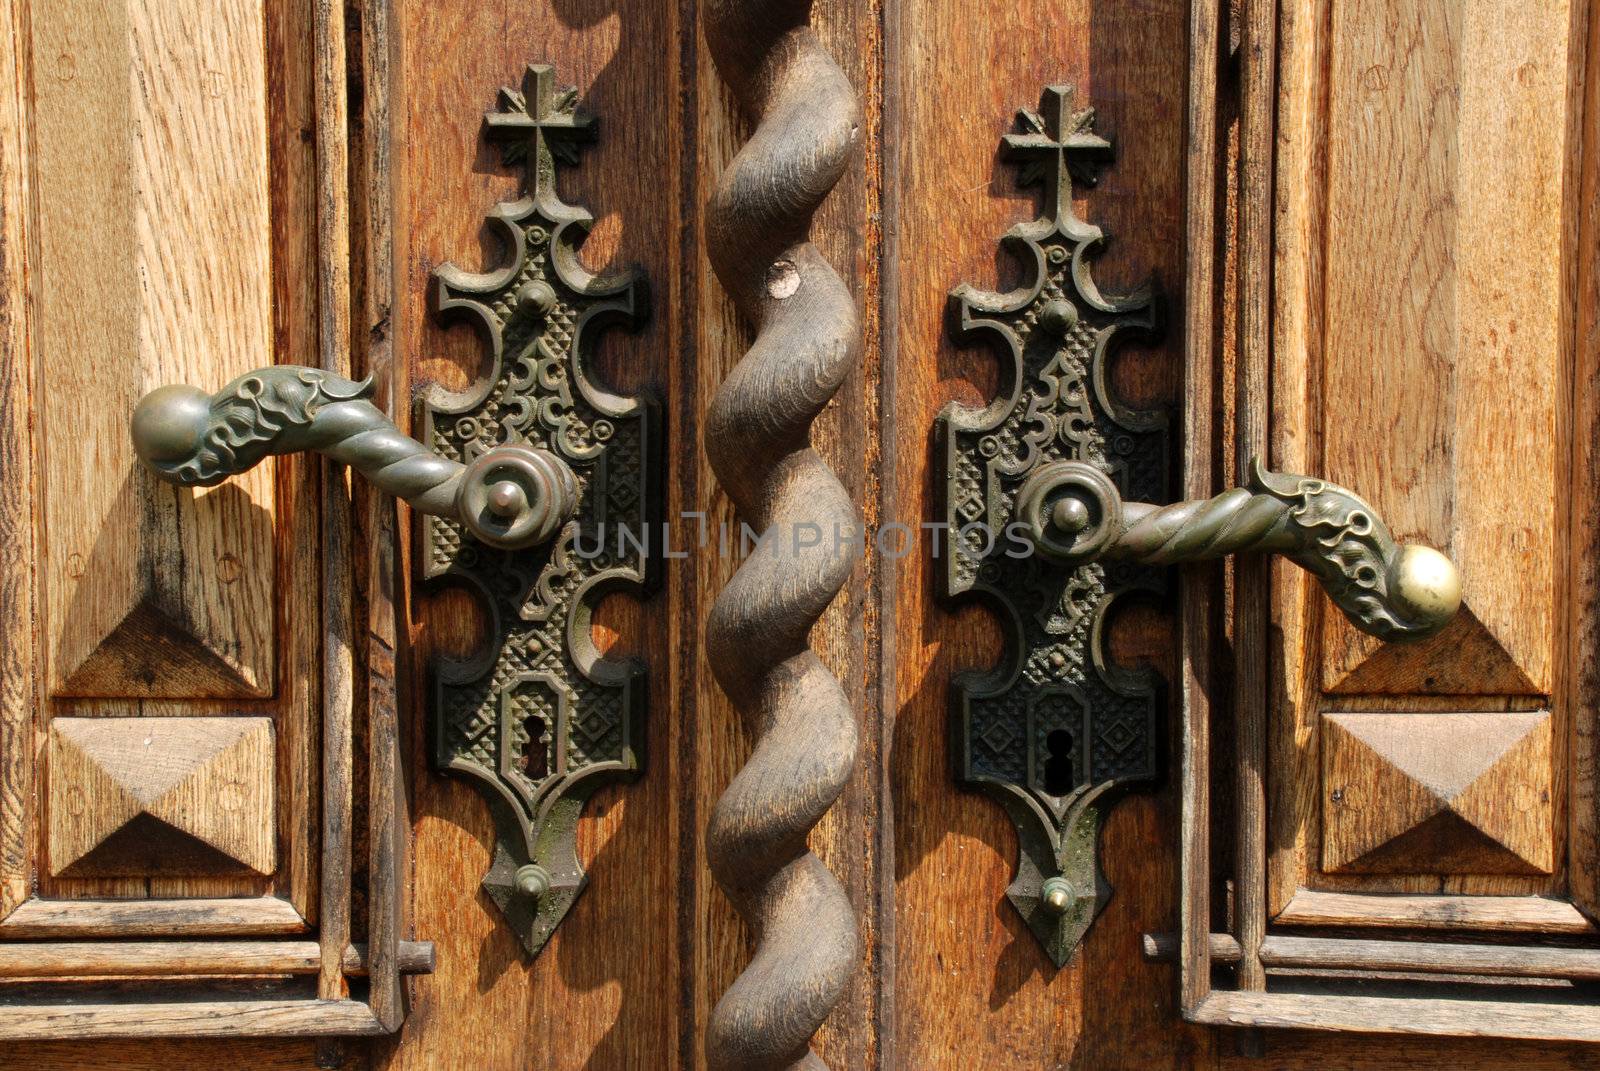 Ancient door handles by fyletto